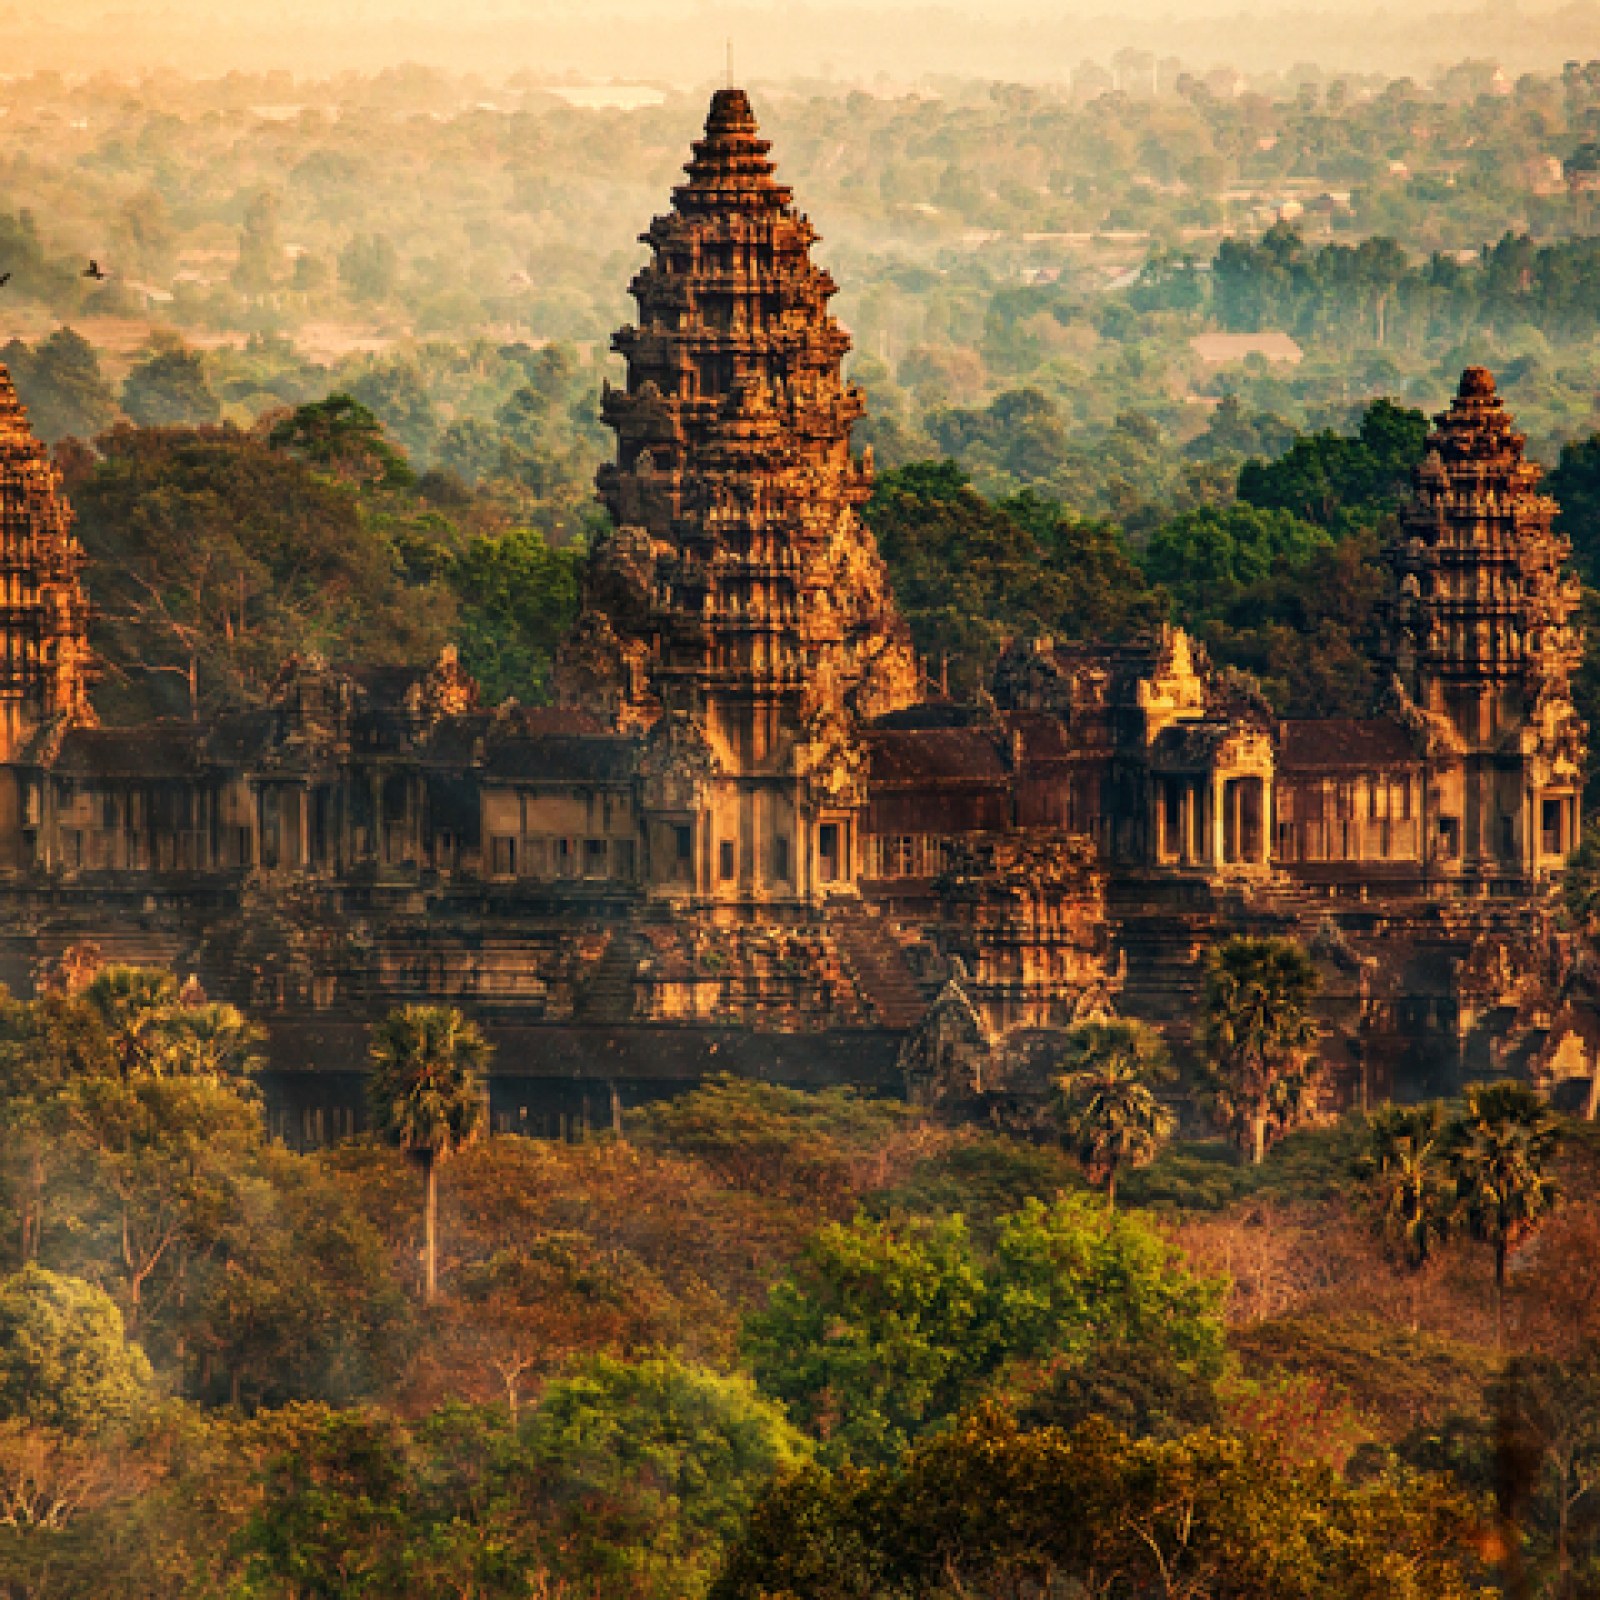 Why was Angkor Wat abandoned?